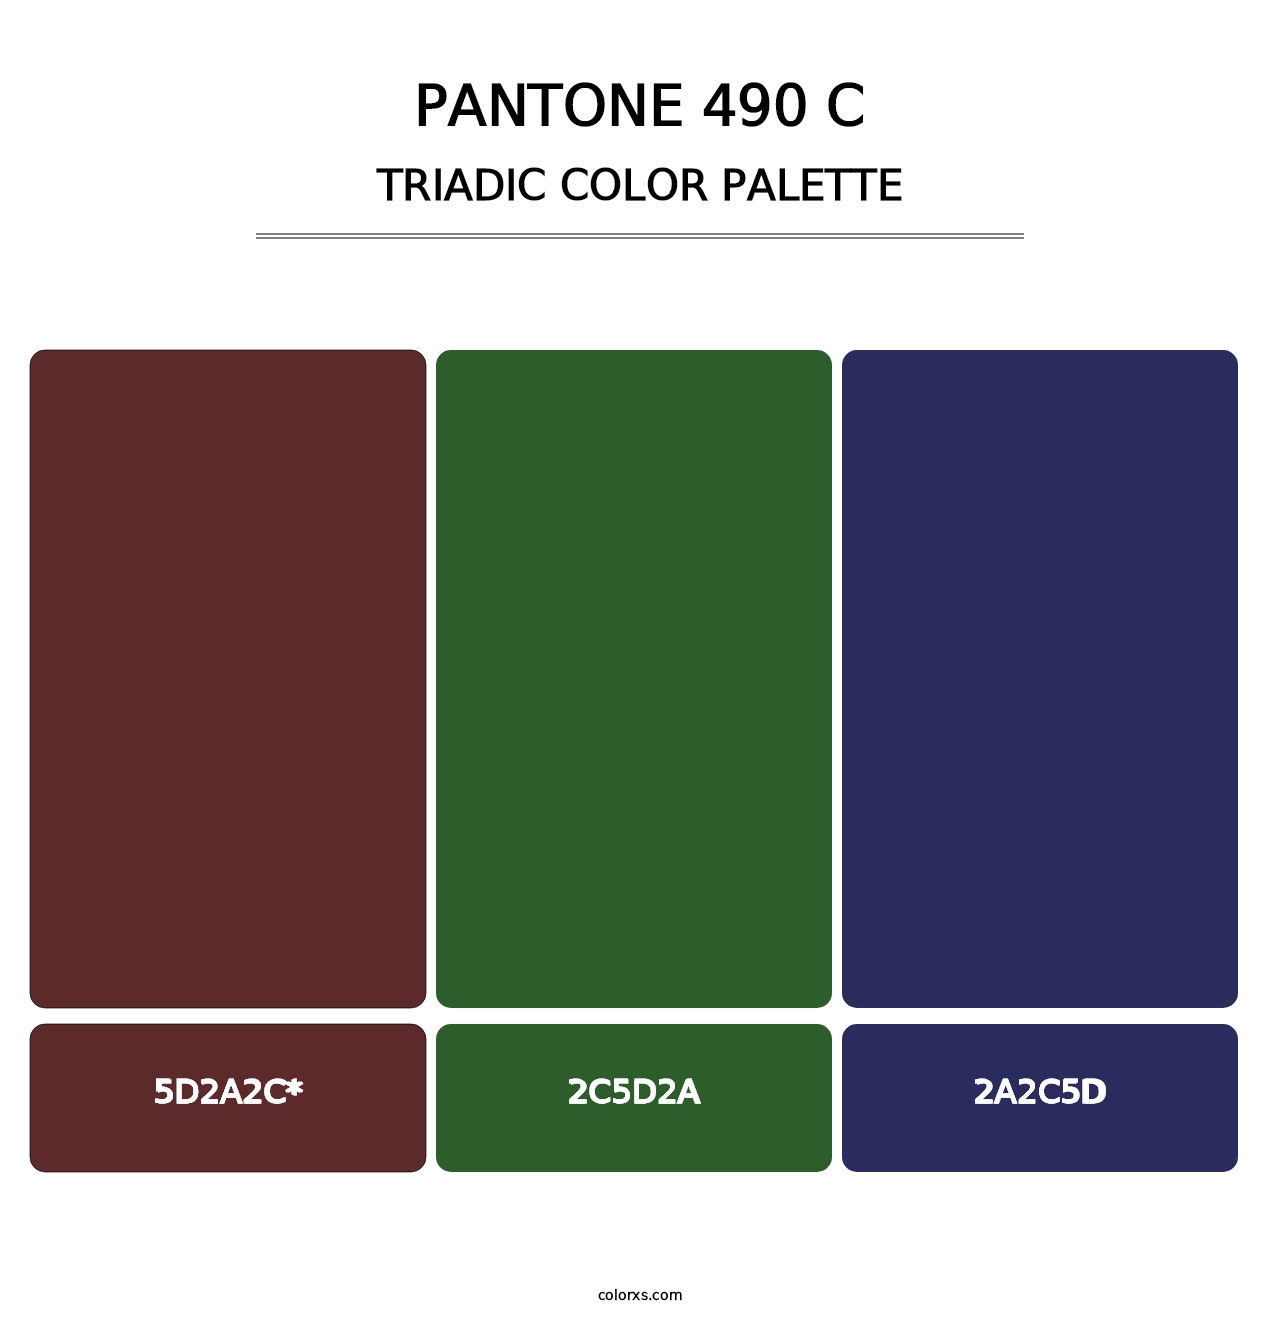 PANTONE 490 C - Triadic Color Palette